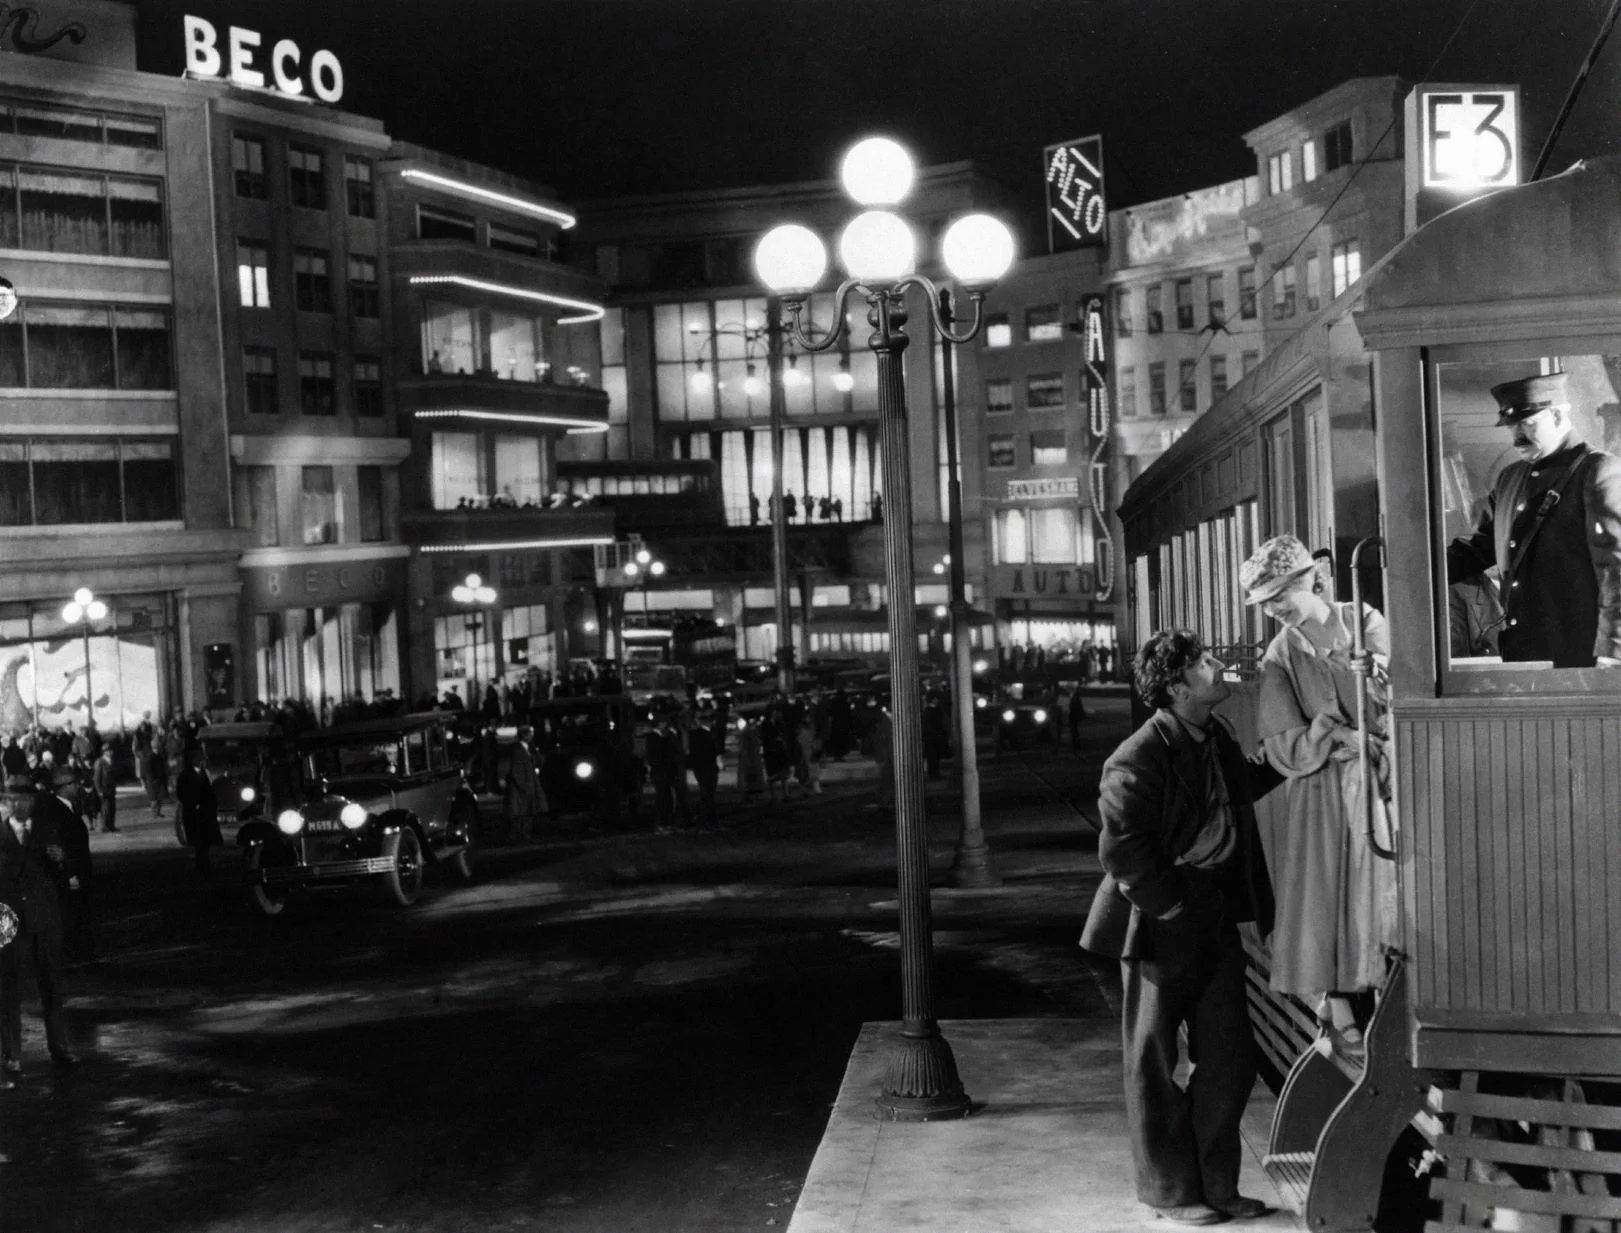 3.茂瑙 (F. W. Murnau) 的名作《Sunrise: A Song of Two Humans》(1927) 劇照，反映當時的衣著和不夜城的霓虹景象。女主角珍納姬娜(Janet Gaynor) 憑此片和同年另兩部電影贏得第一屆奧斯金像獎最佳女主角。